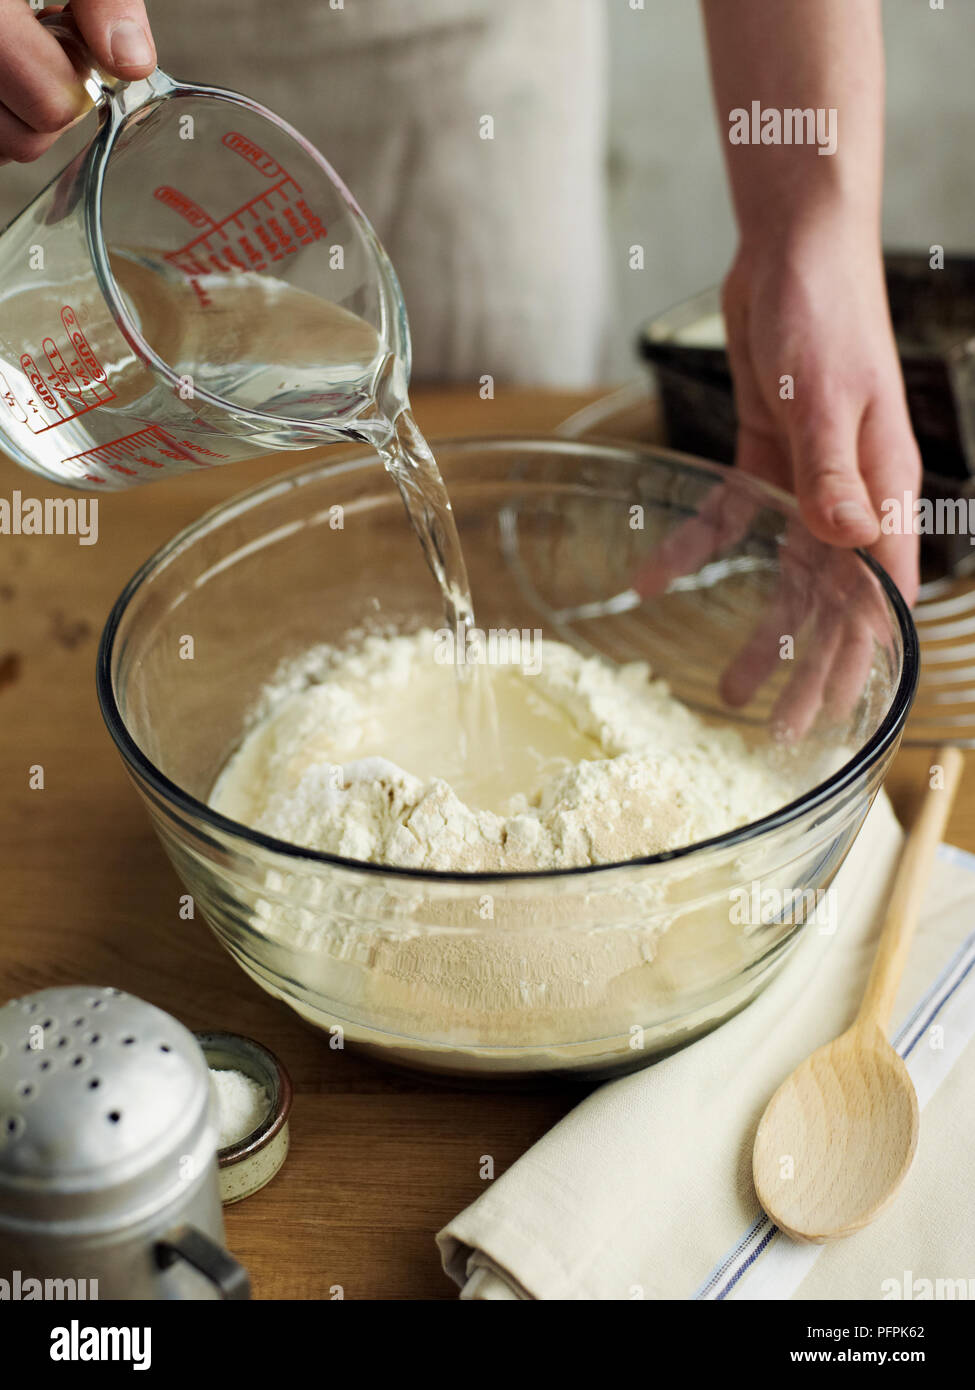 Das Gießen von Wasser aus der Kanne zu mischen mit anderen Zutaten in der Schüssel (Brot) Stockfoto